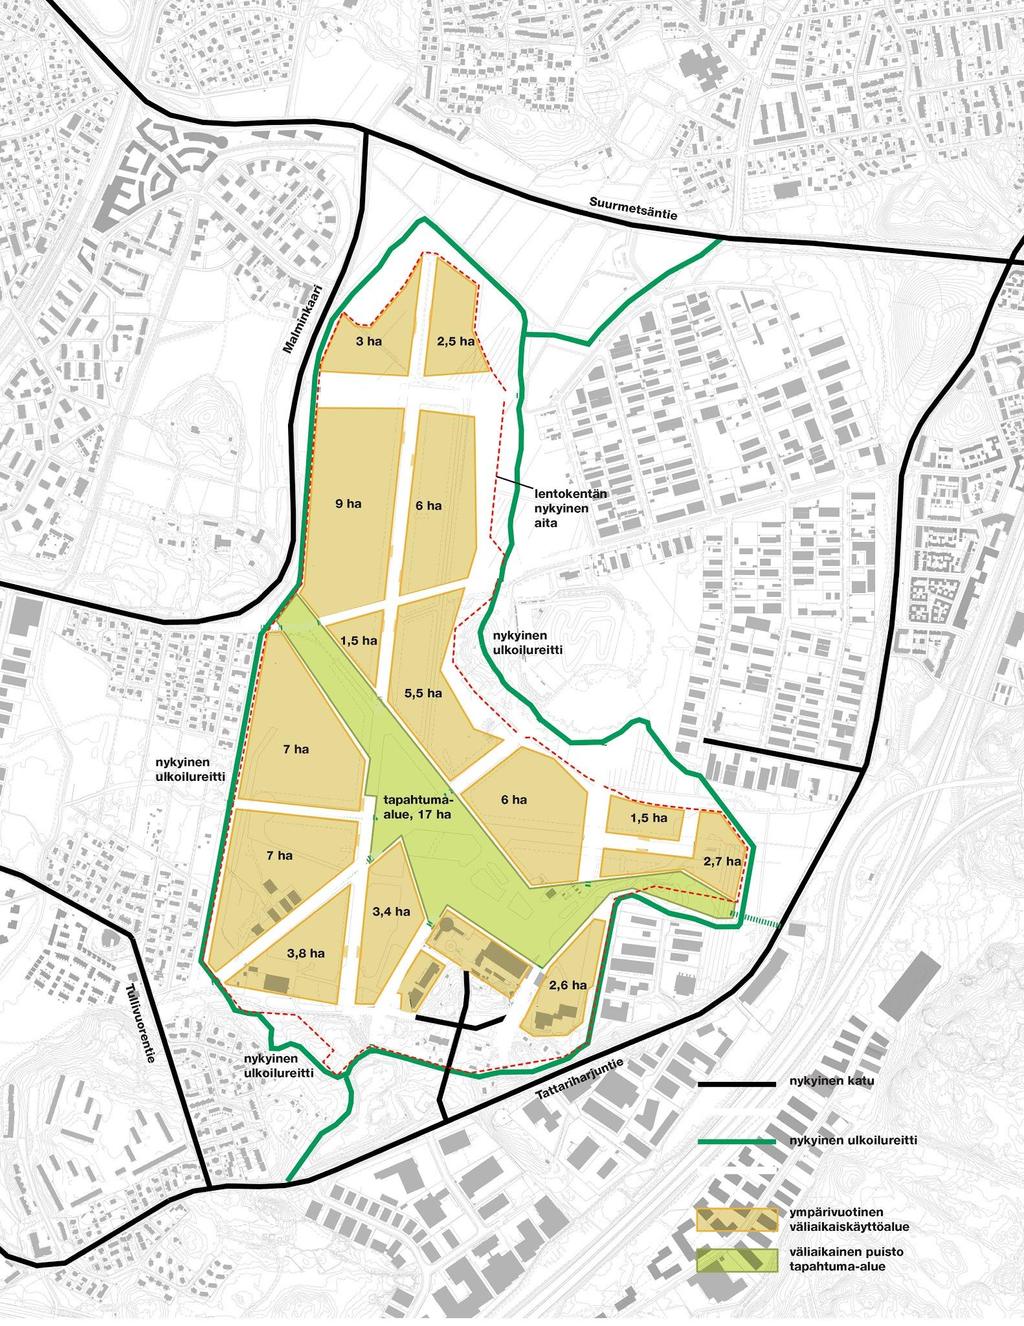 1. Lähtötiedot ja mitoitustilanteet Malmin kenttä on n. 130 hehtaarin alue (kuva 1.), jonka ympärille suunnitellaan 25 000 asukkaan asuntoaluetta.